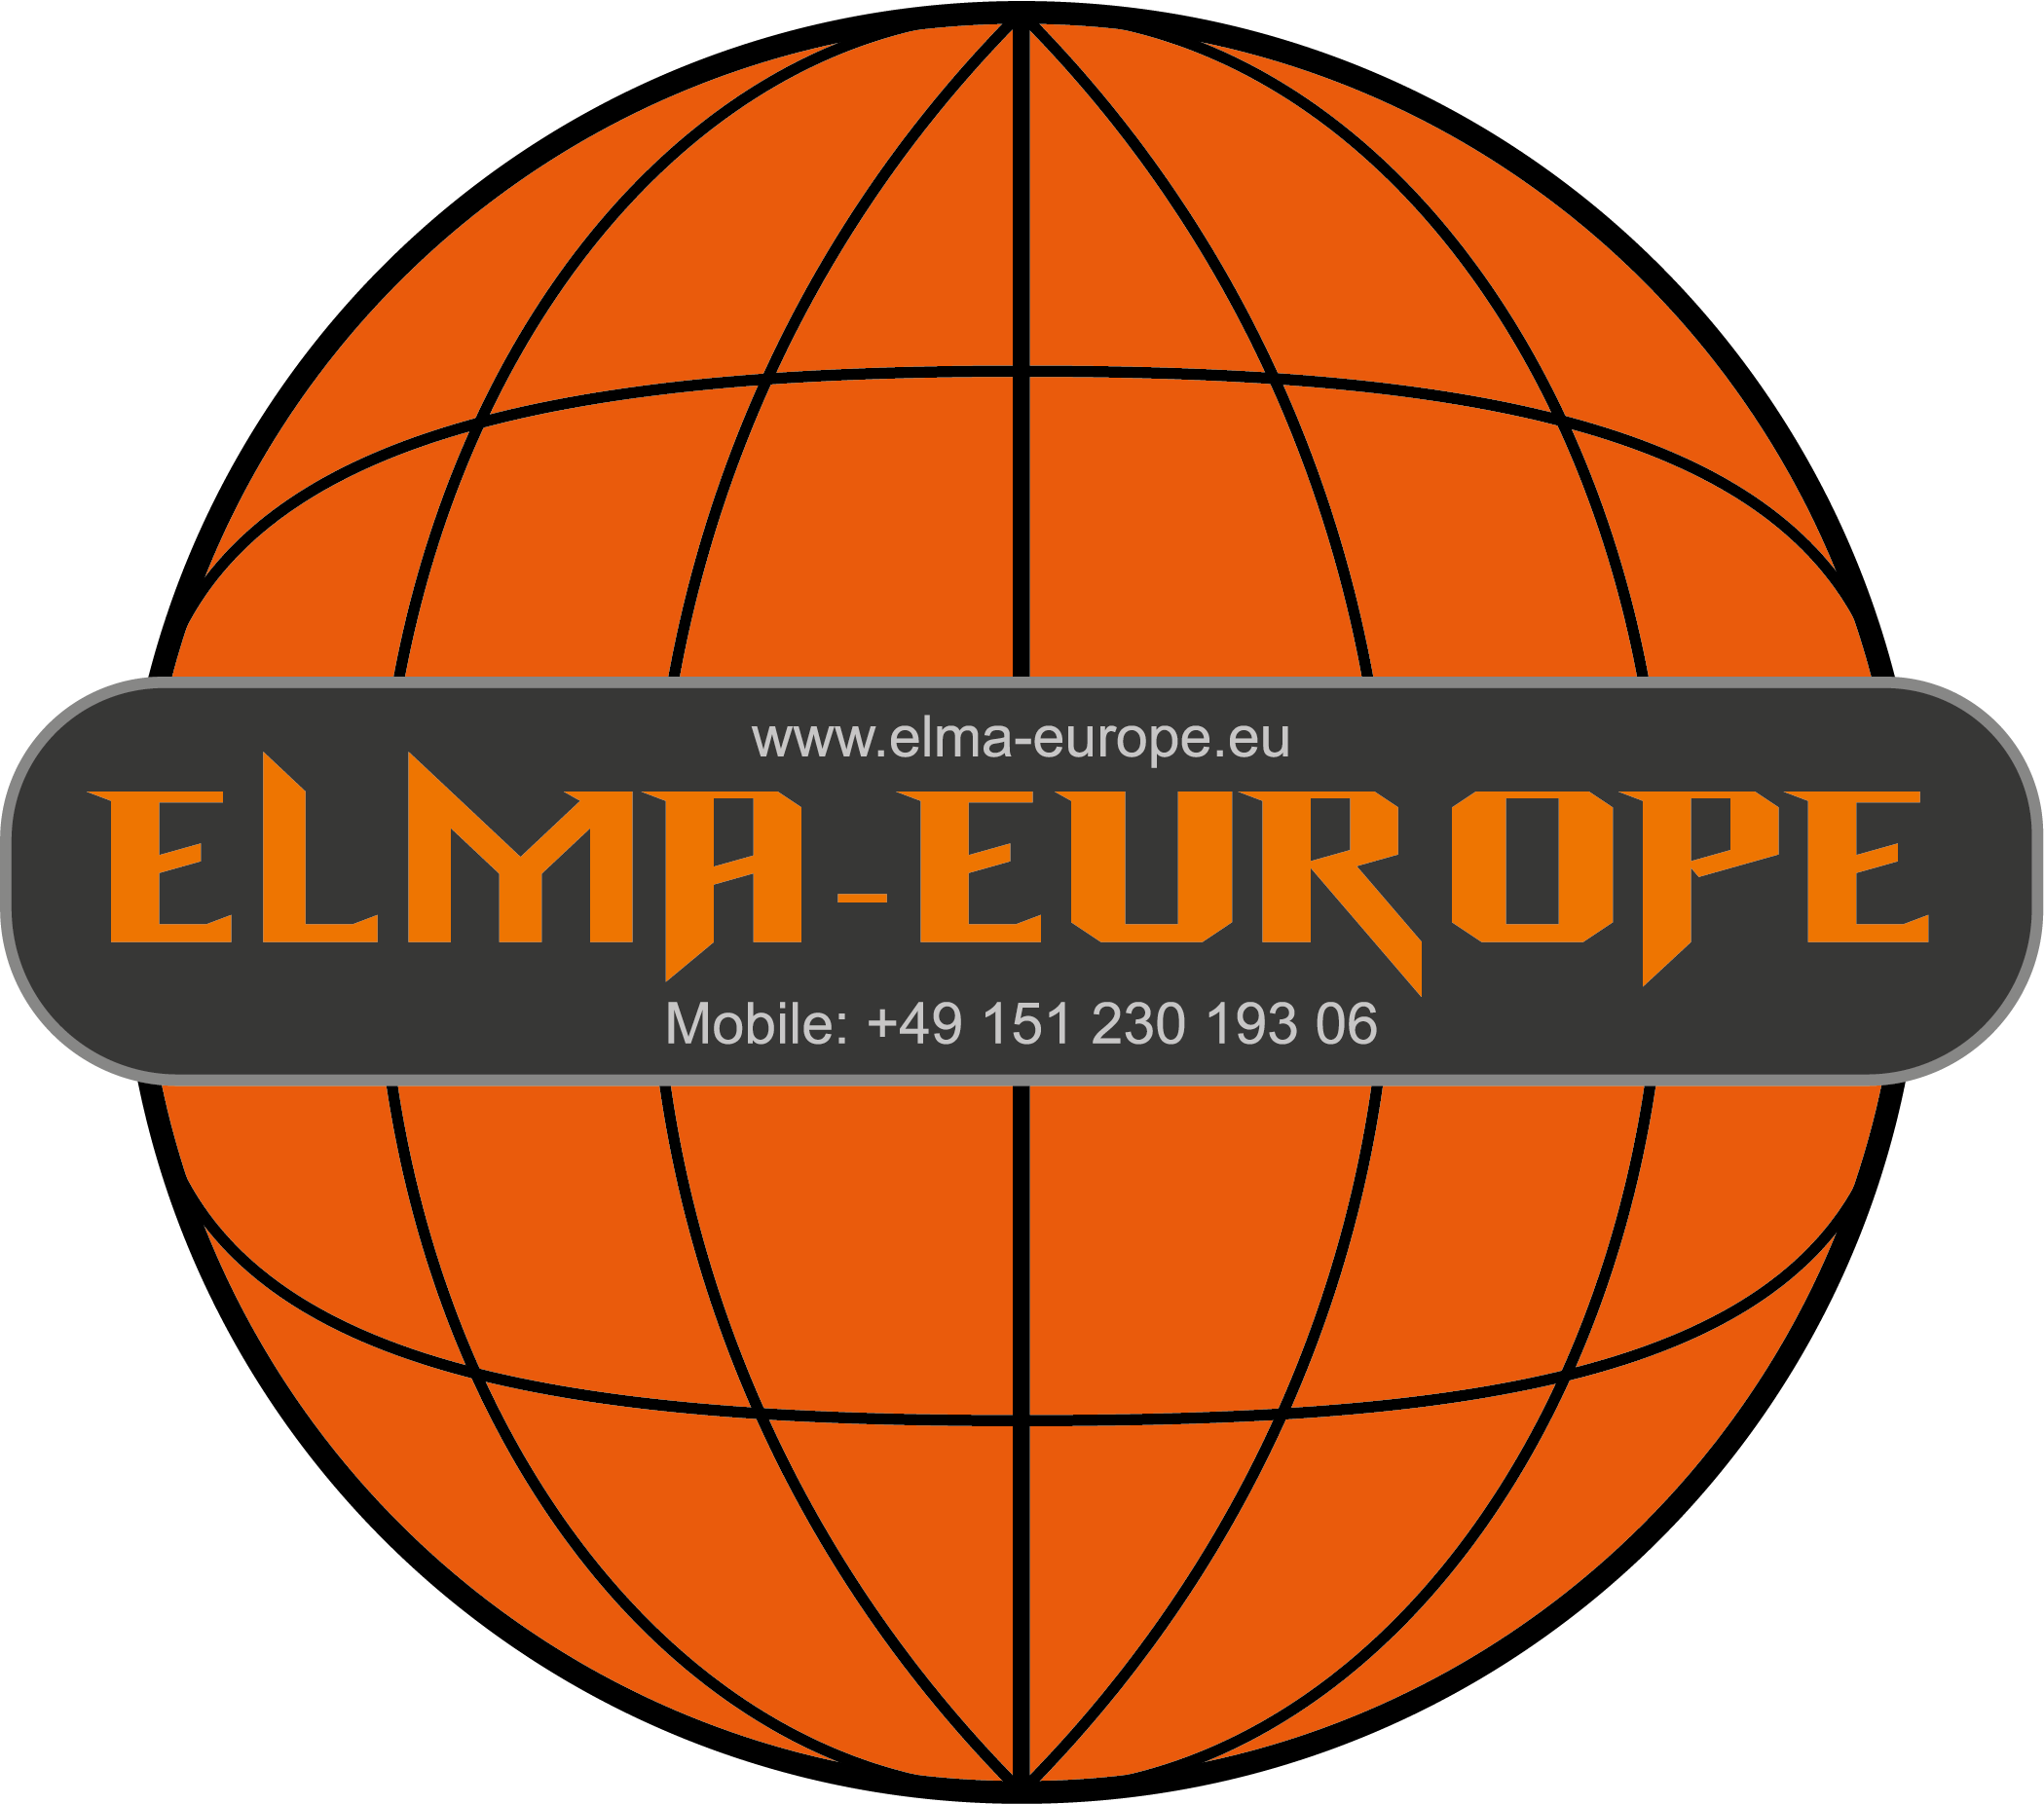 Absperrgitter und Absperrungen von Elma Europe - Firmenlogo und Fahrzeugbeschriftung